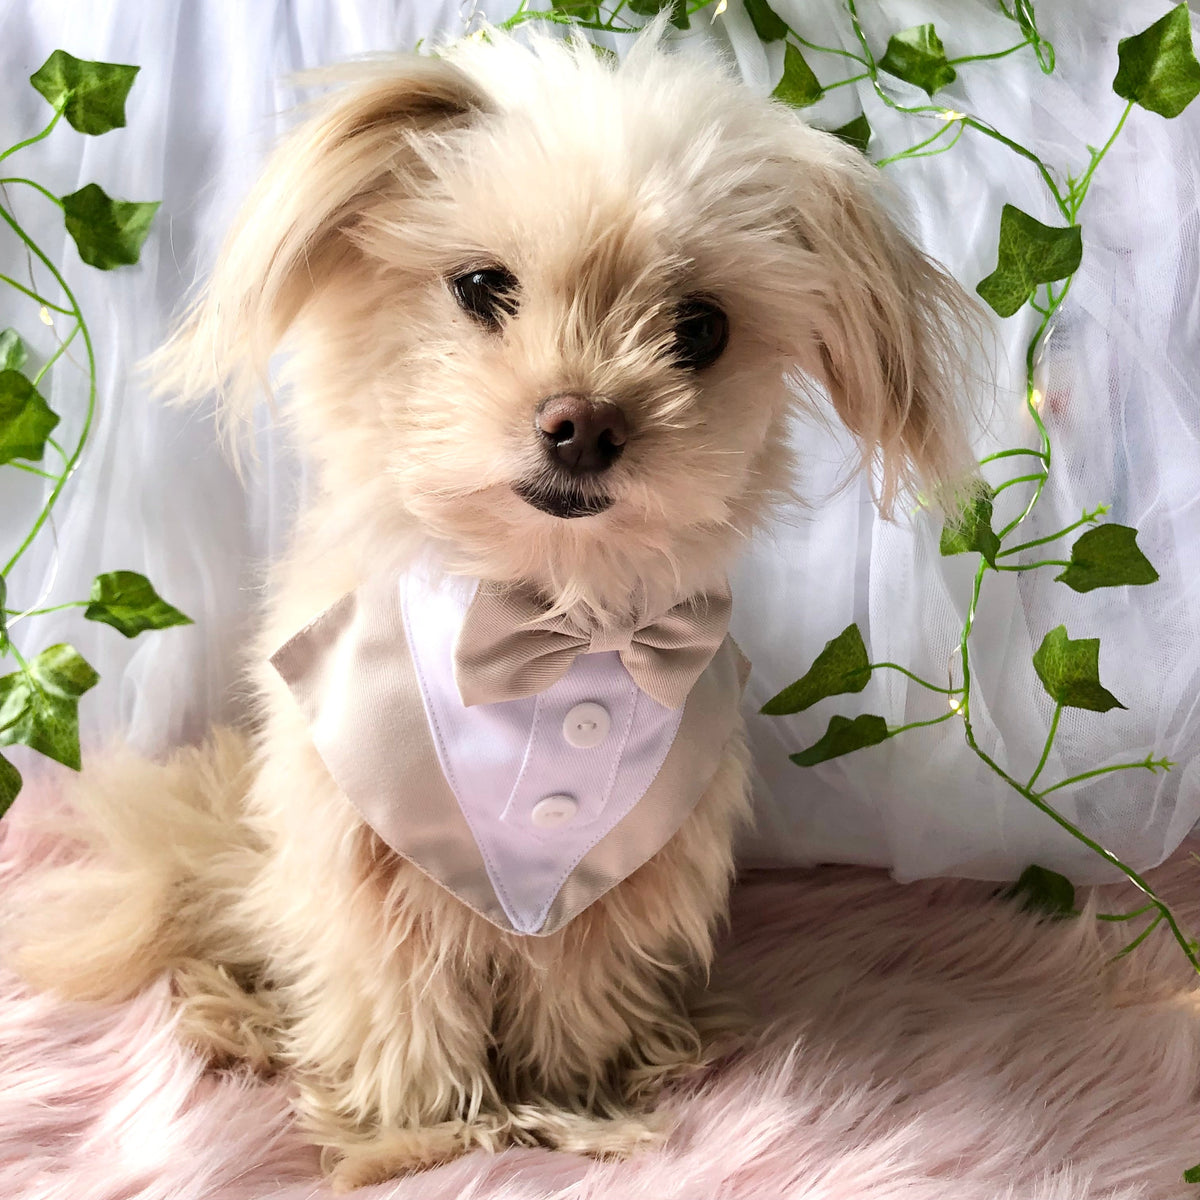 Dog Tuxedo Bandana with Flower Boutonniere - Beige